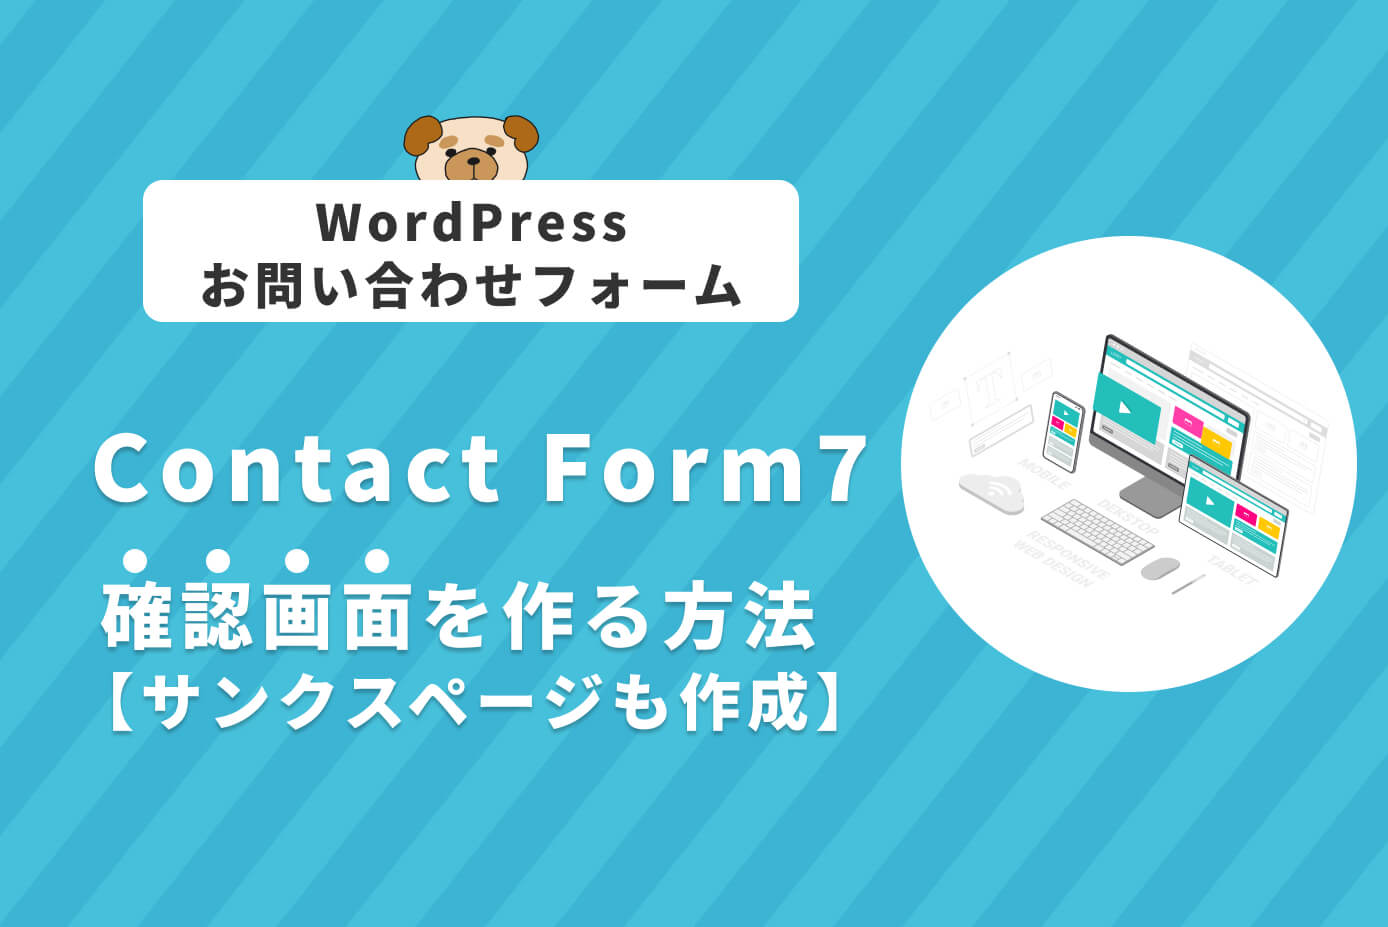 WordPress】Contact Form 7で確認画面を作る方法【サンクスページも 